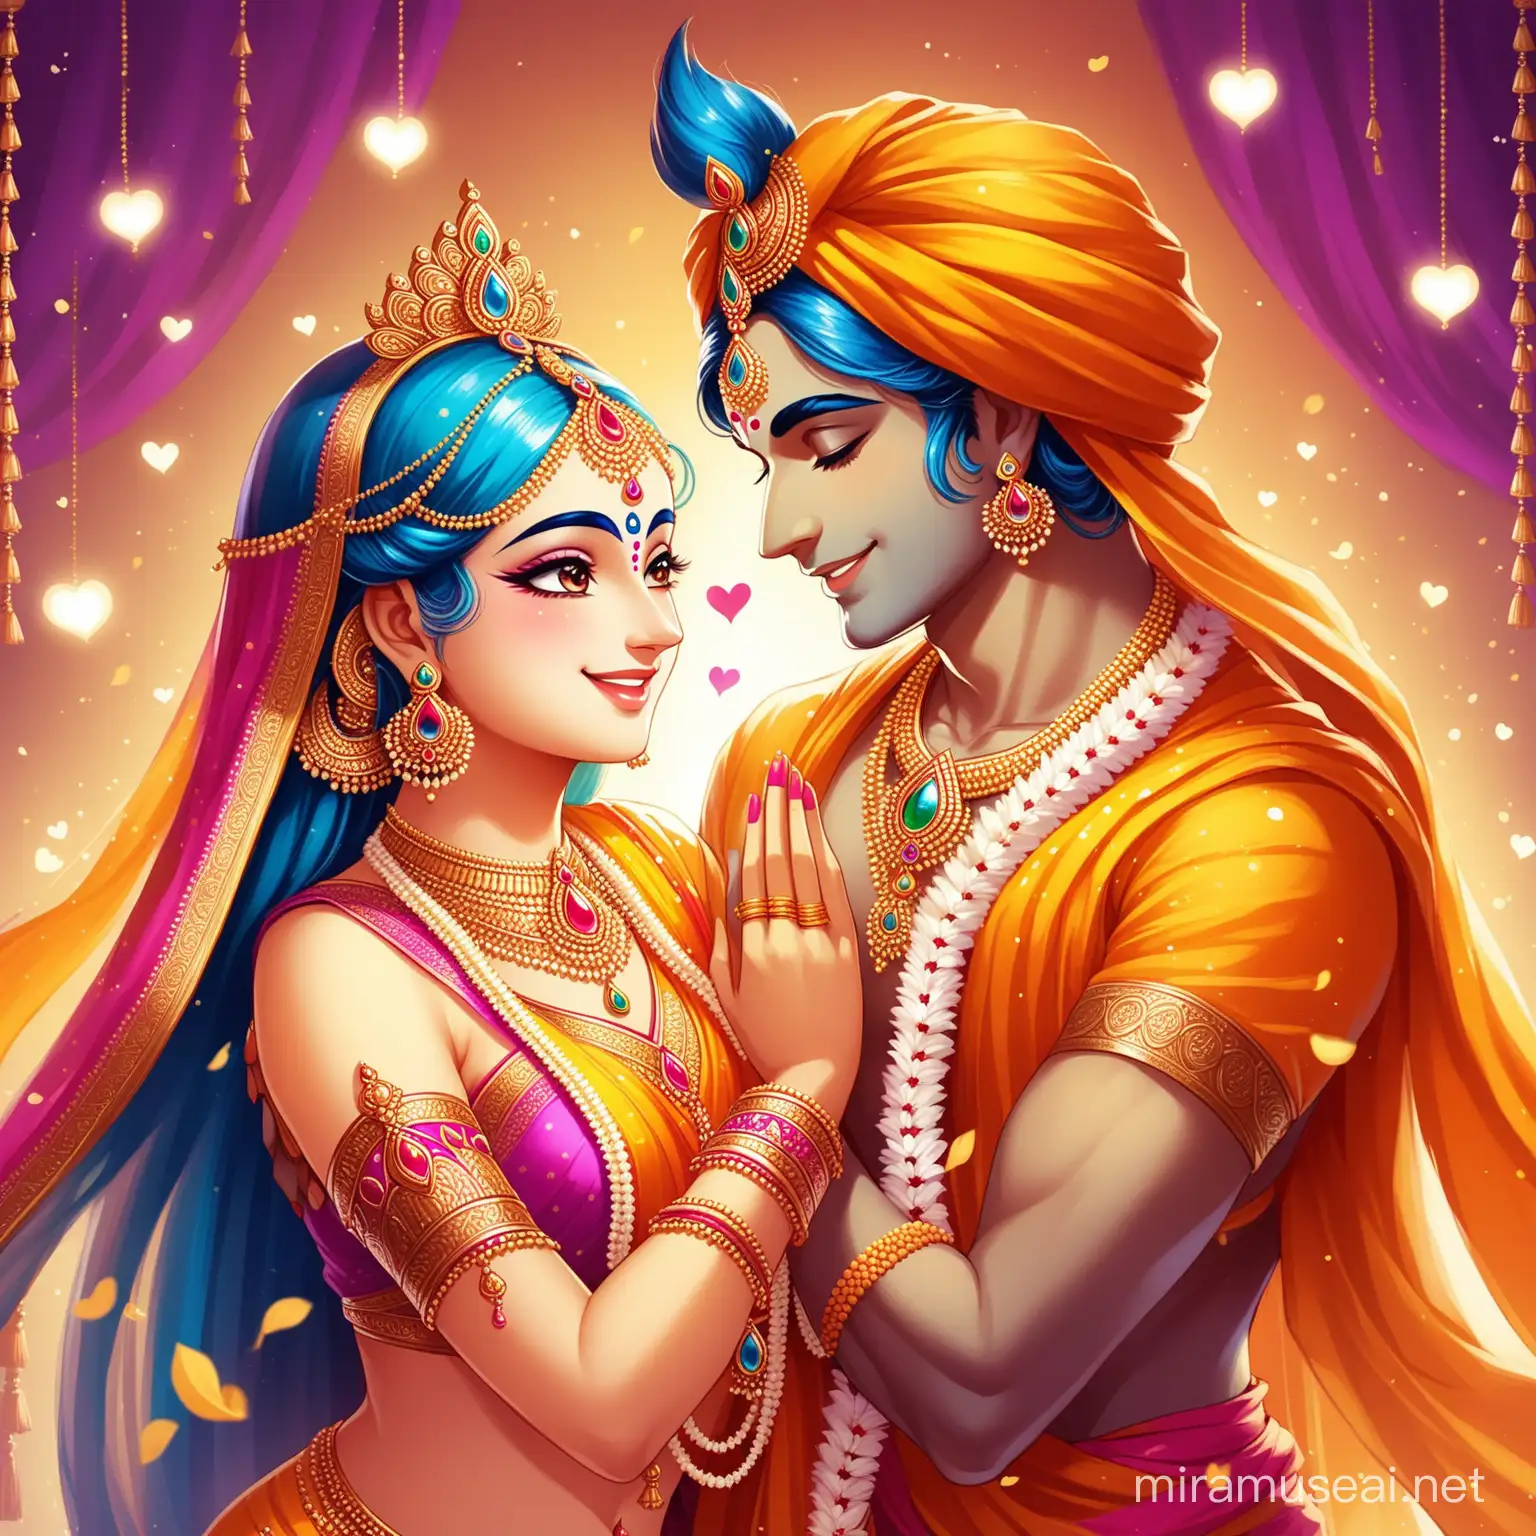 Divine Radiance Radha and Krishnas Joyful Playfulness